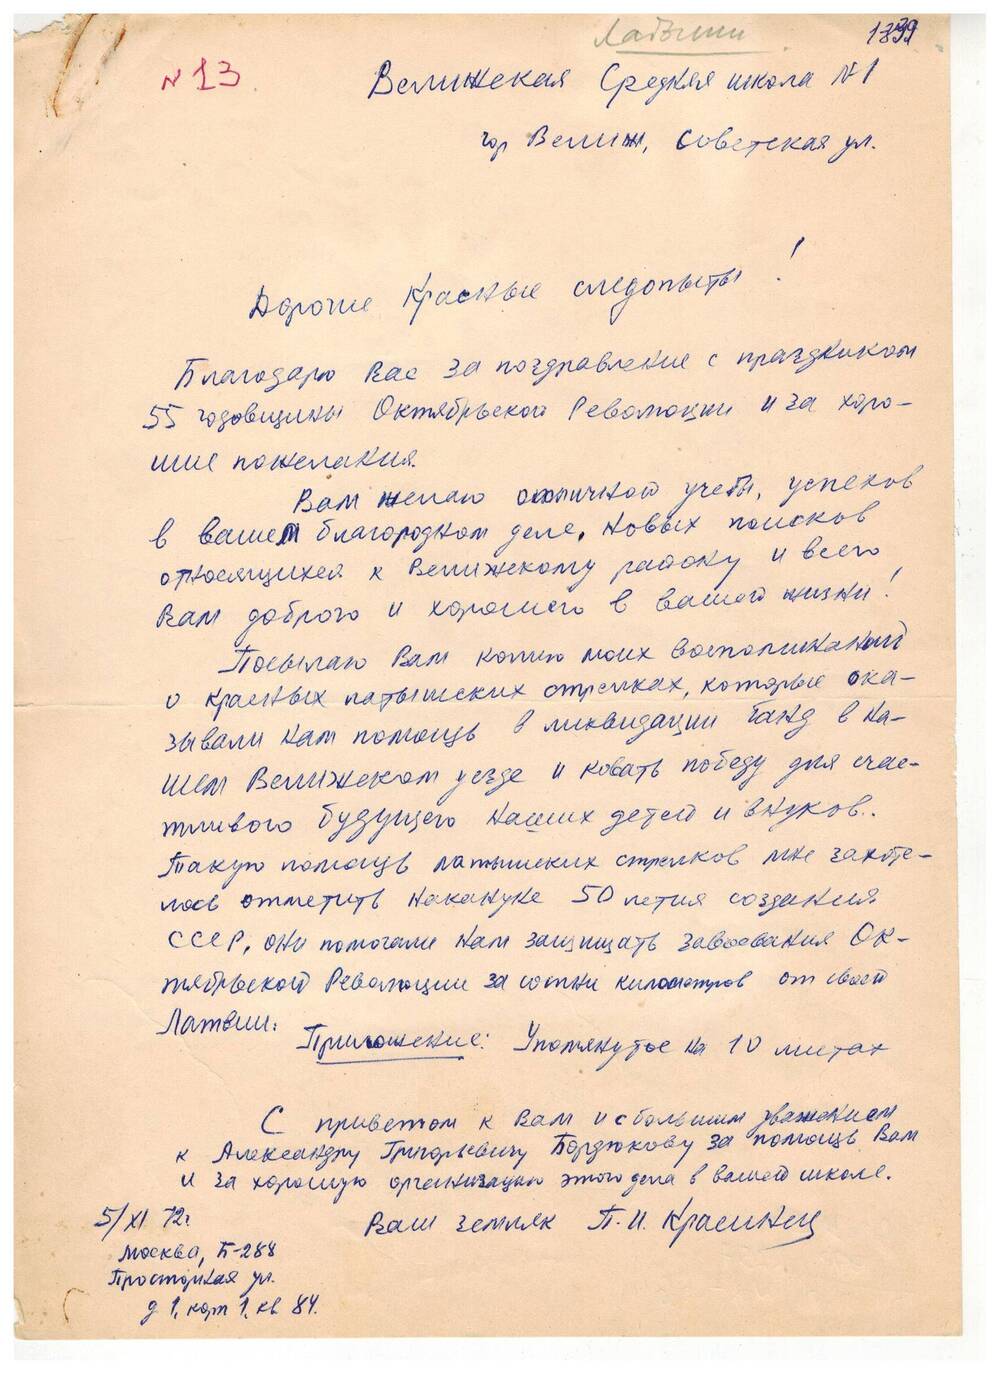 Письмо-воспоминание П. Красинец пишет в краеведческий кружок «Красные следопыты»